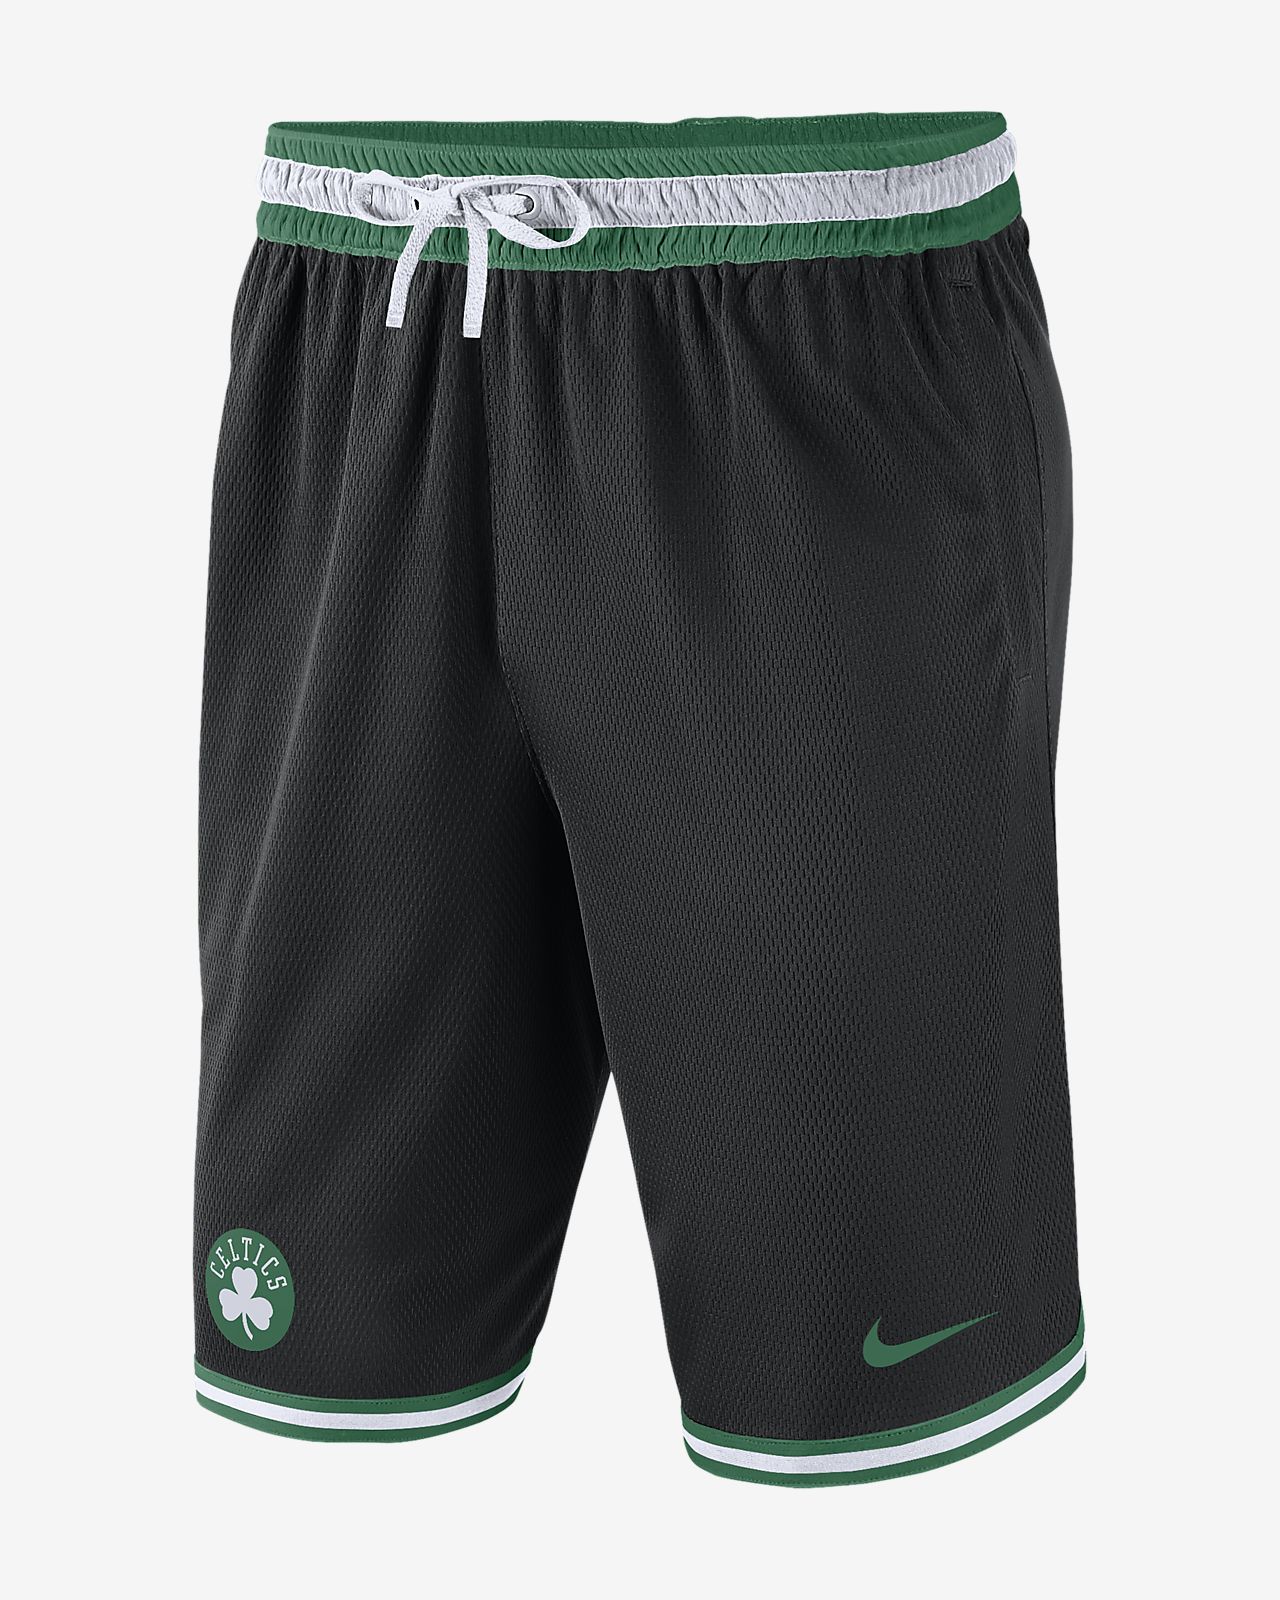 Boston Celtics Nike Men's NBA Shorts. Nike.com